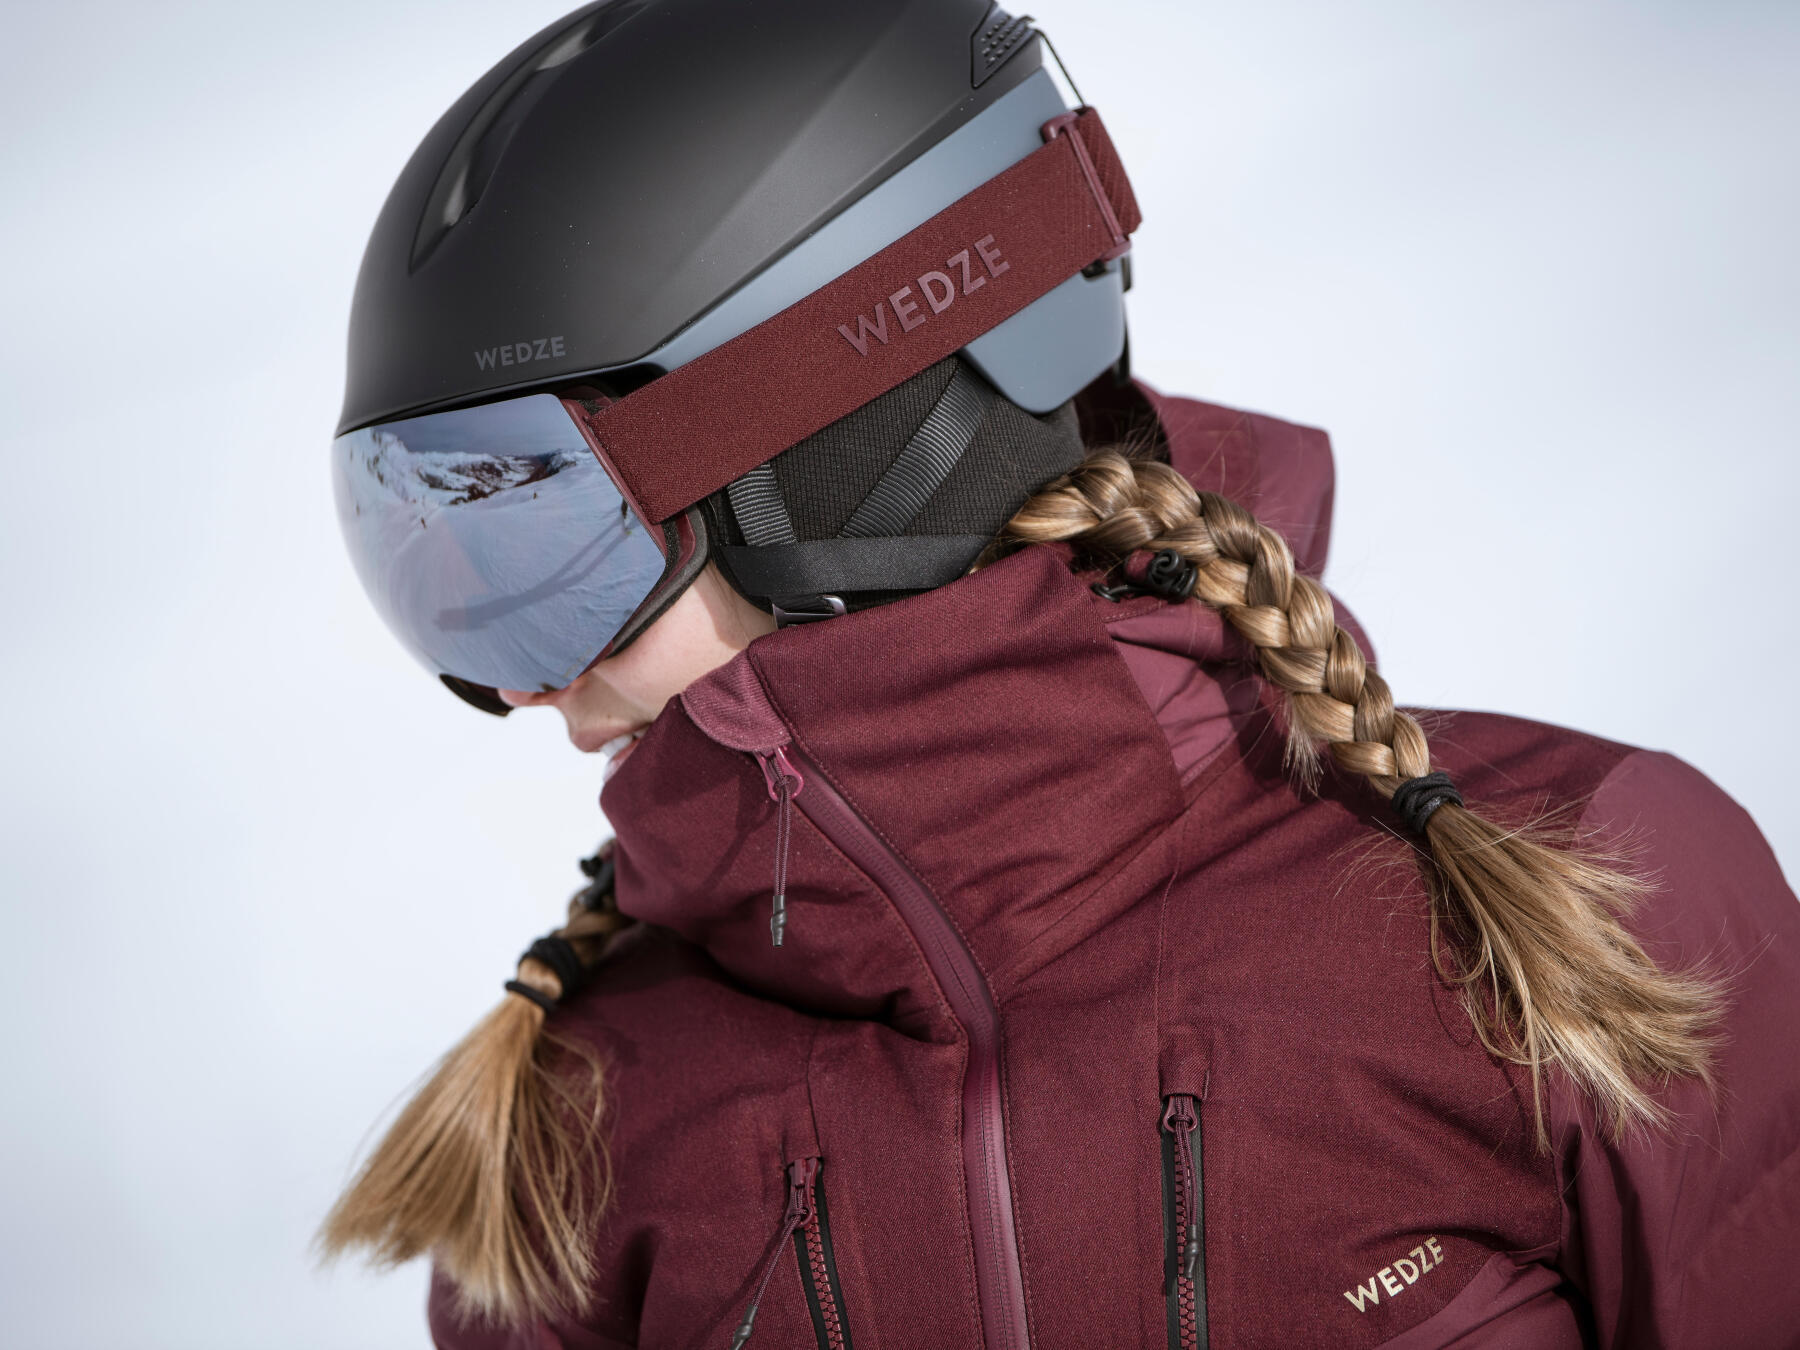 5 ensembles casque masque pour mieux skier